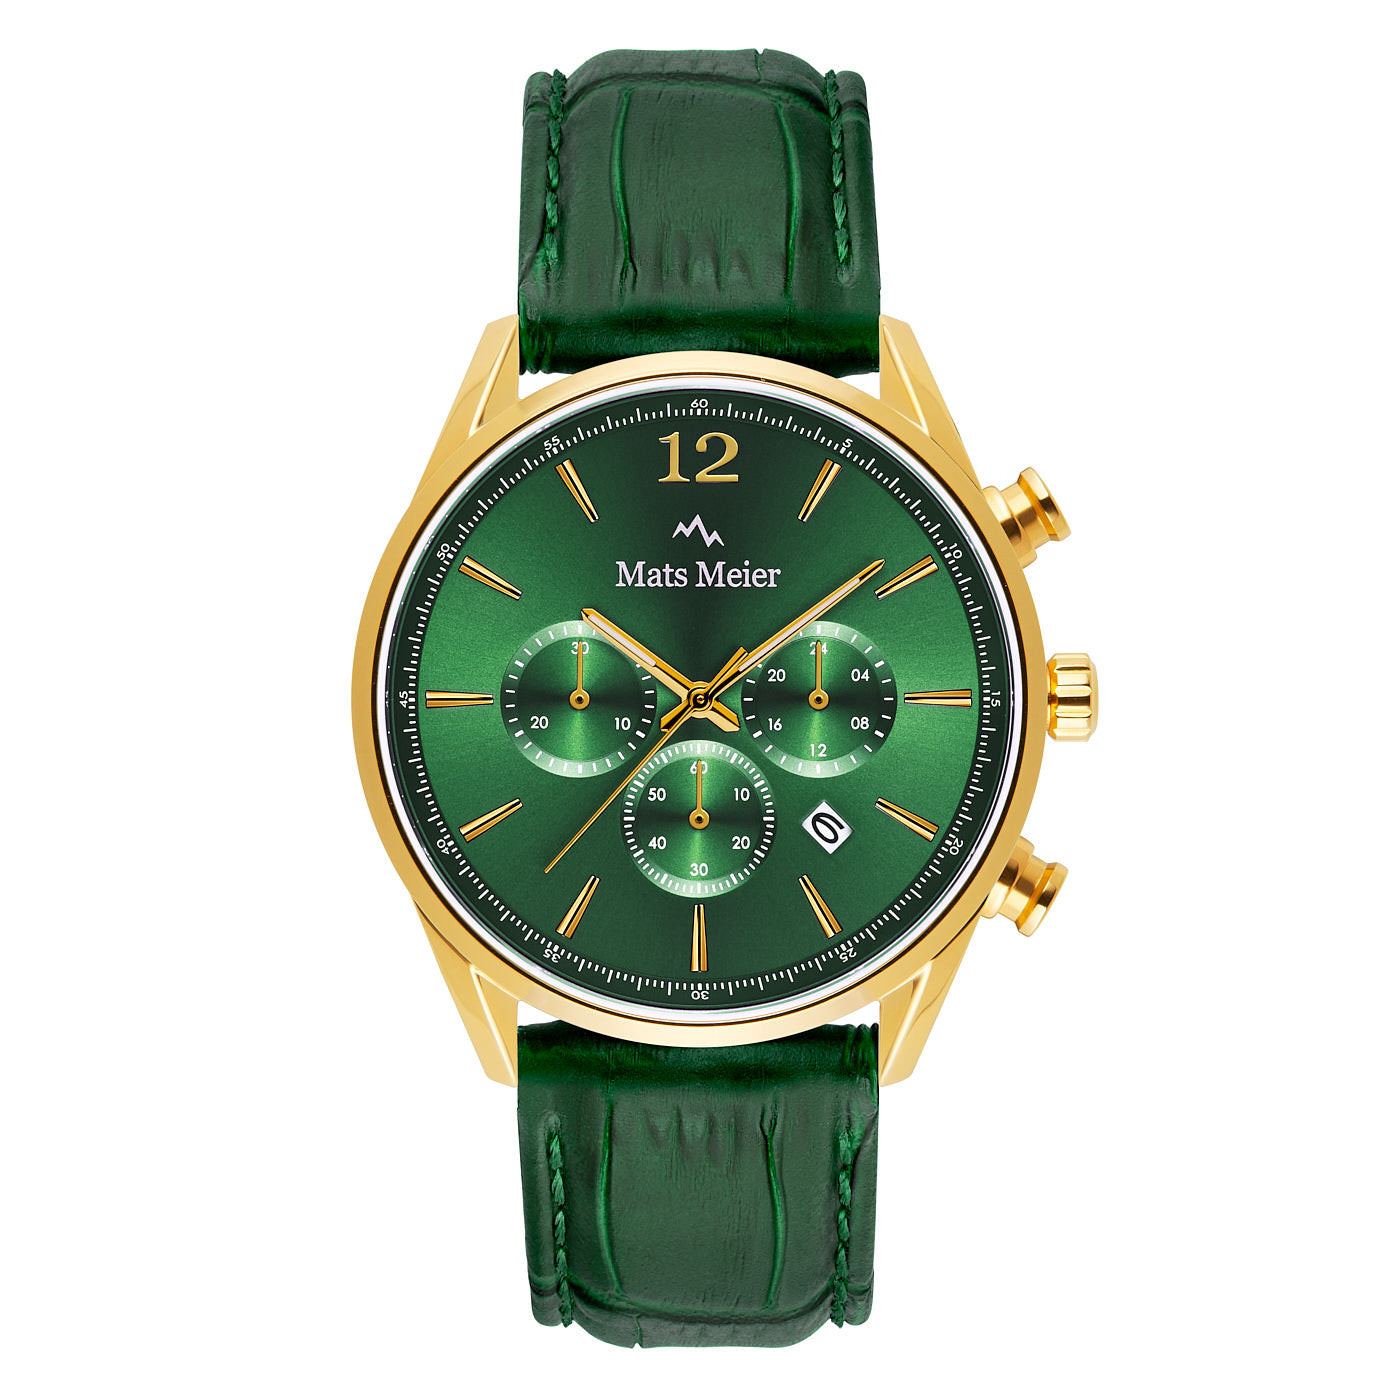 Grand Cornier chronograaf herenhorloge groen en goudkleurig